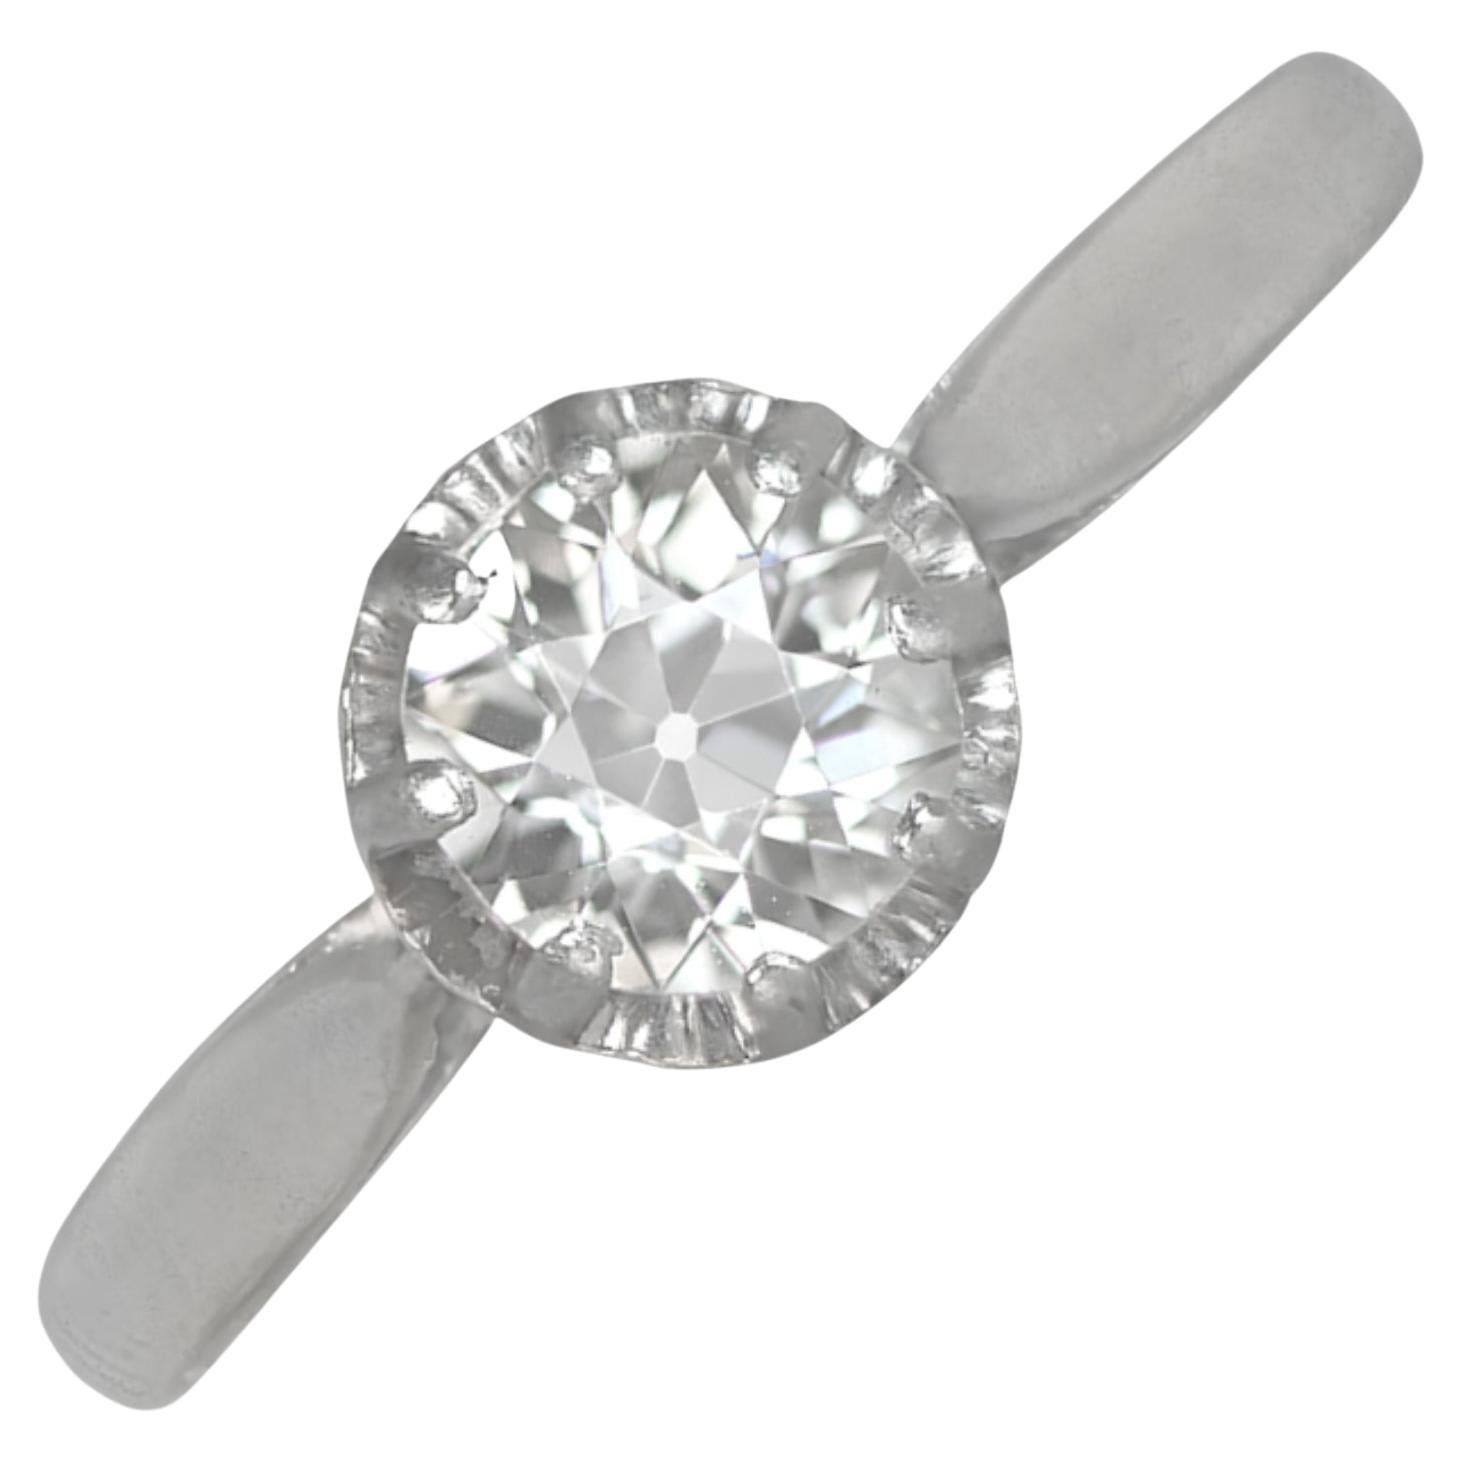 Antique 0.43ct Old European Cut Diamond Engagement Ring, Platinum